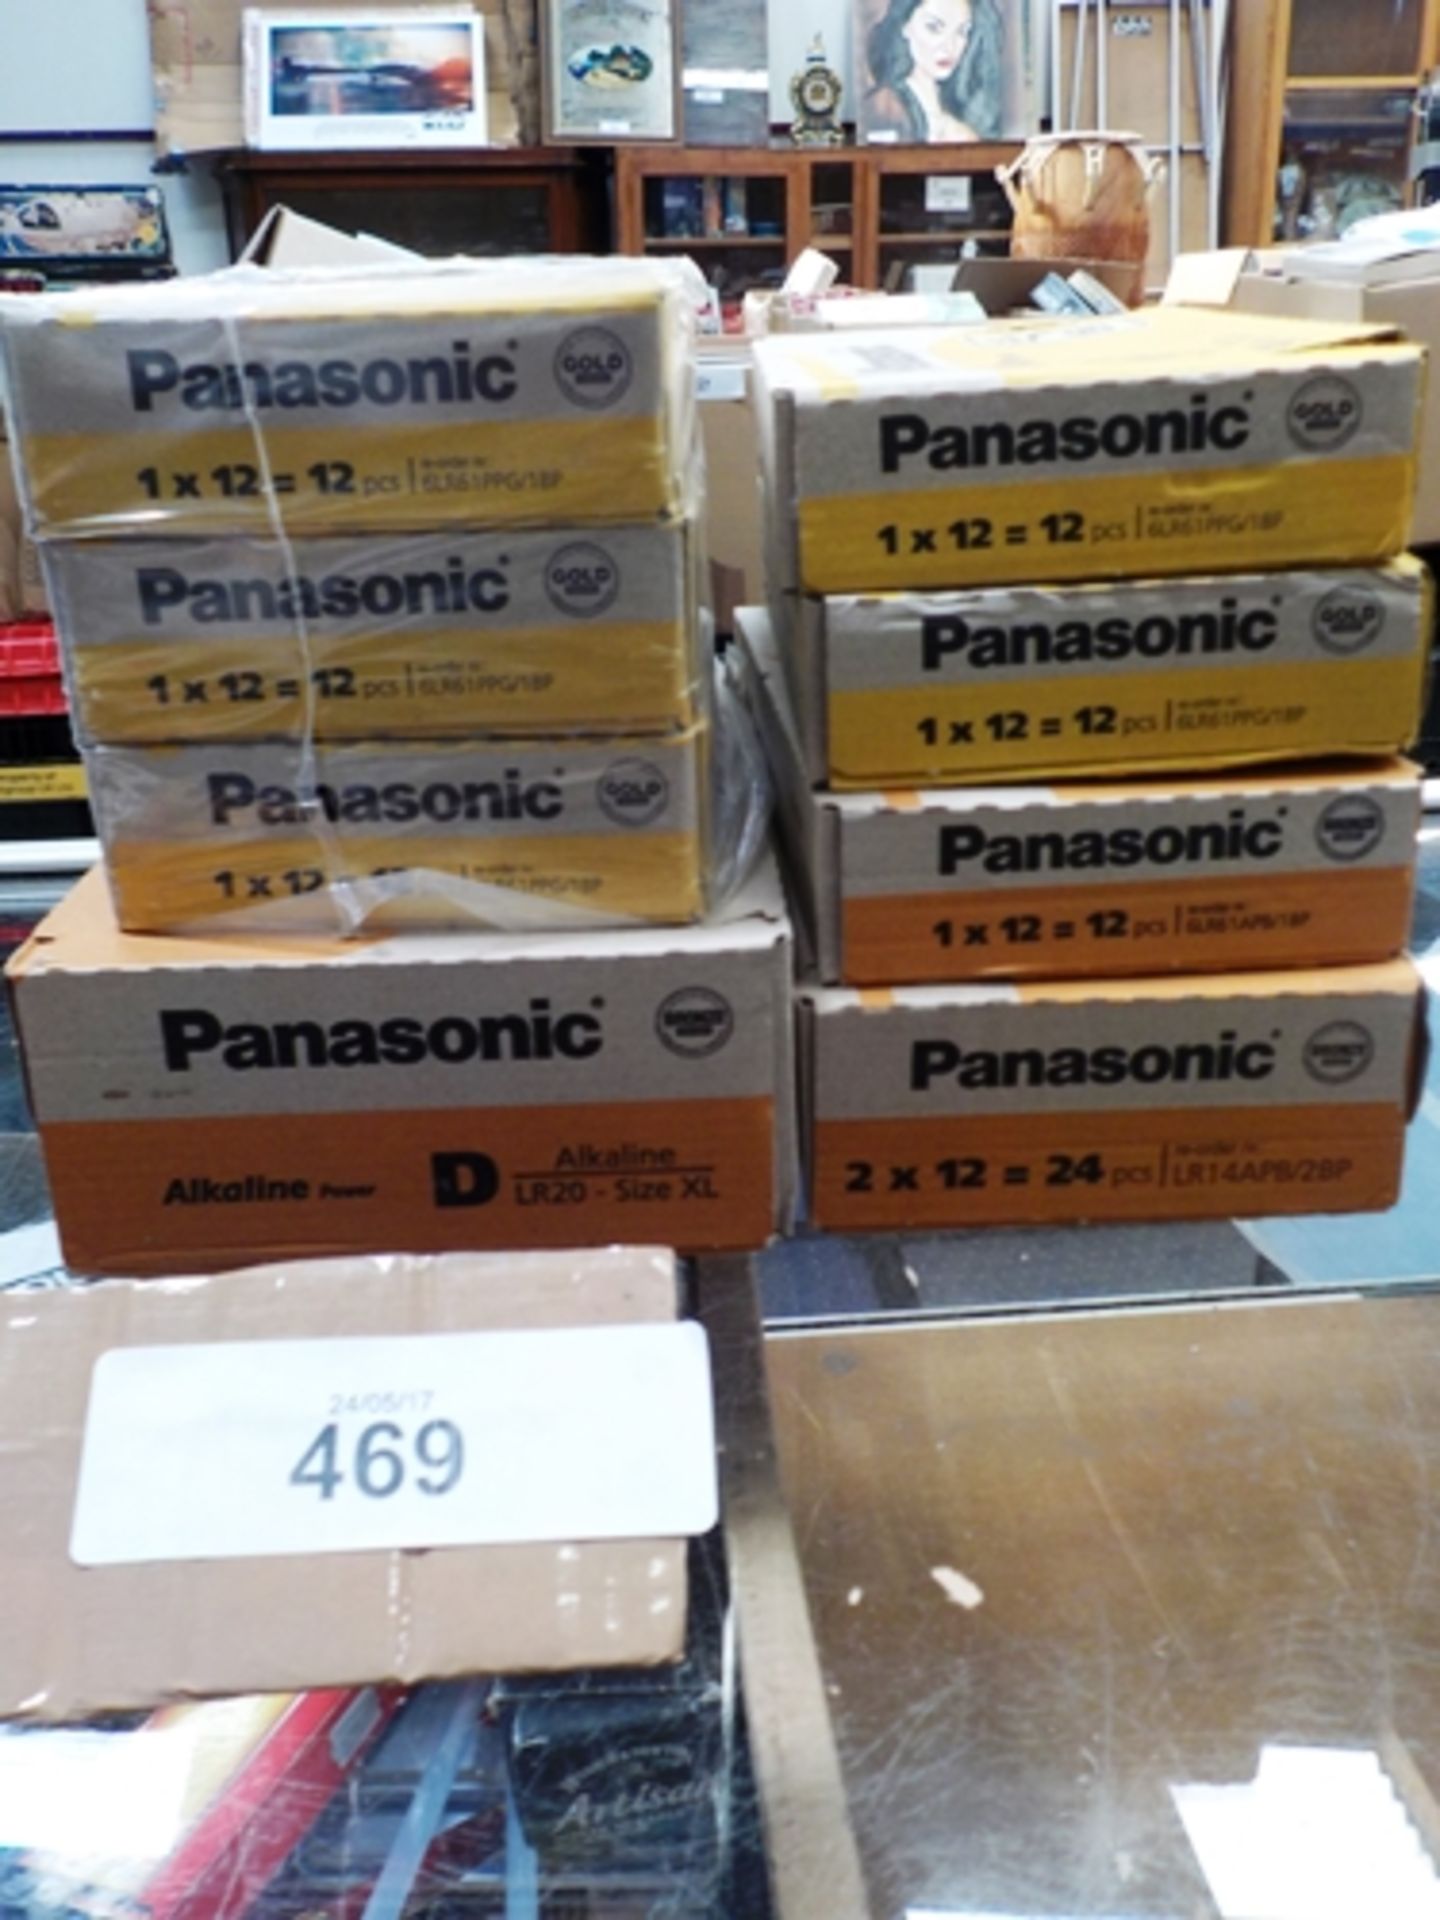 60 x Panasonic 9V batteries, model Propower6LR61PG-1BP, together with 12 x 9V batteries, model